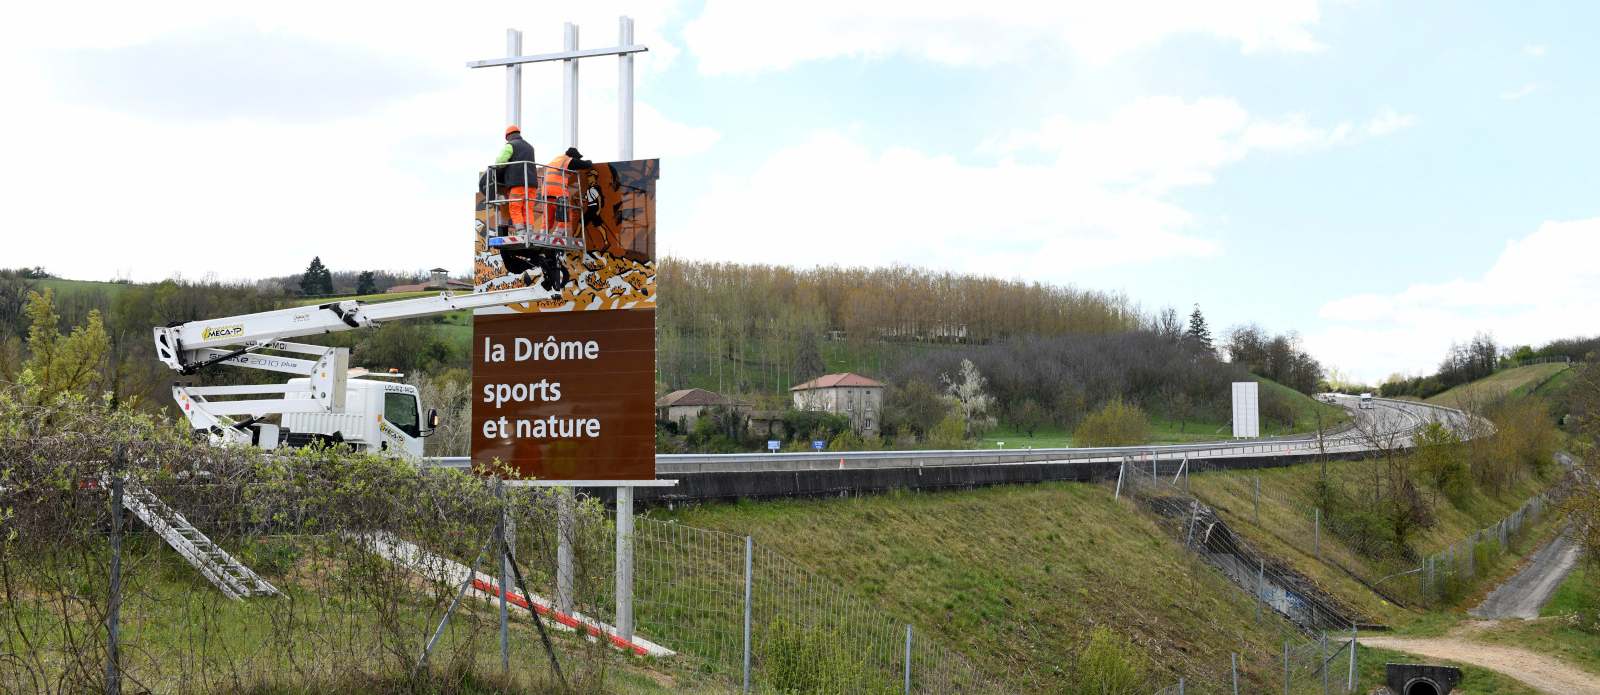 La Drôme s’affiche sur l’A49